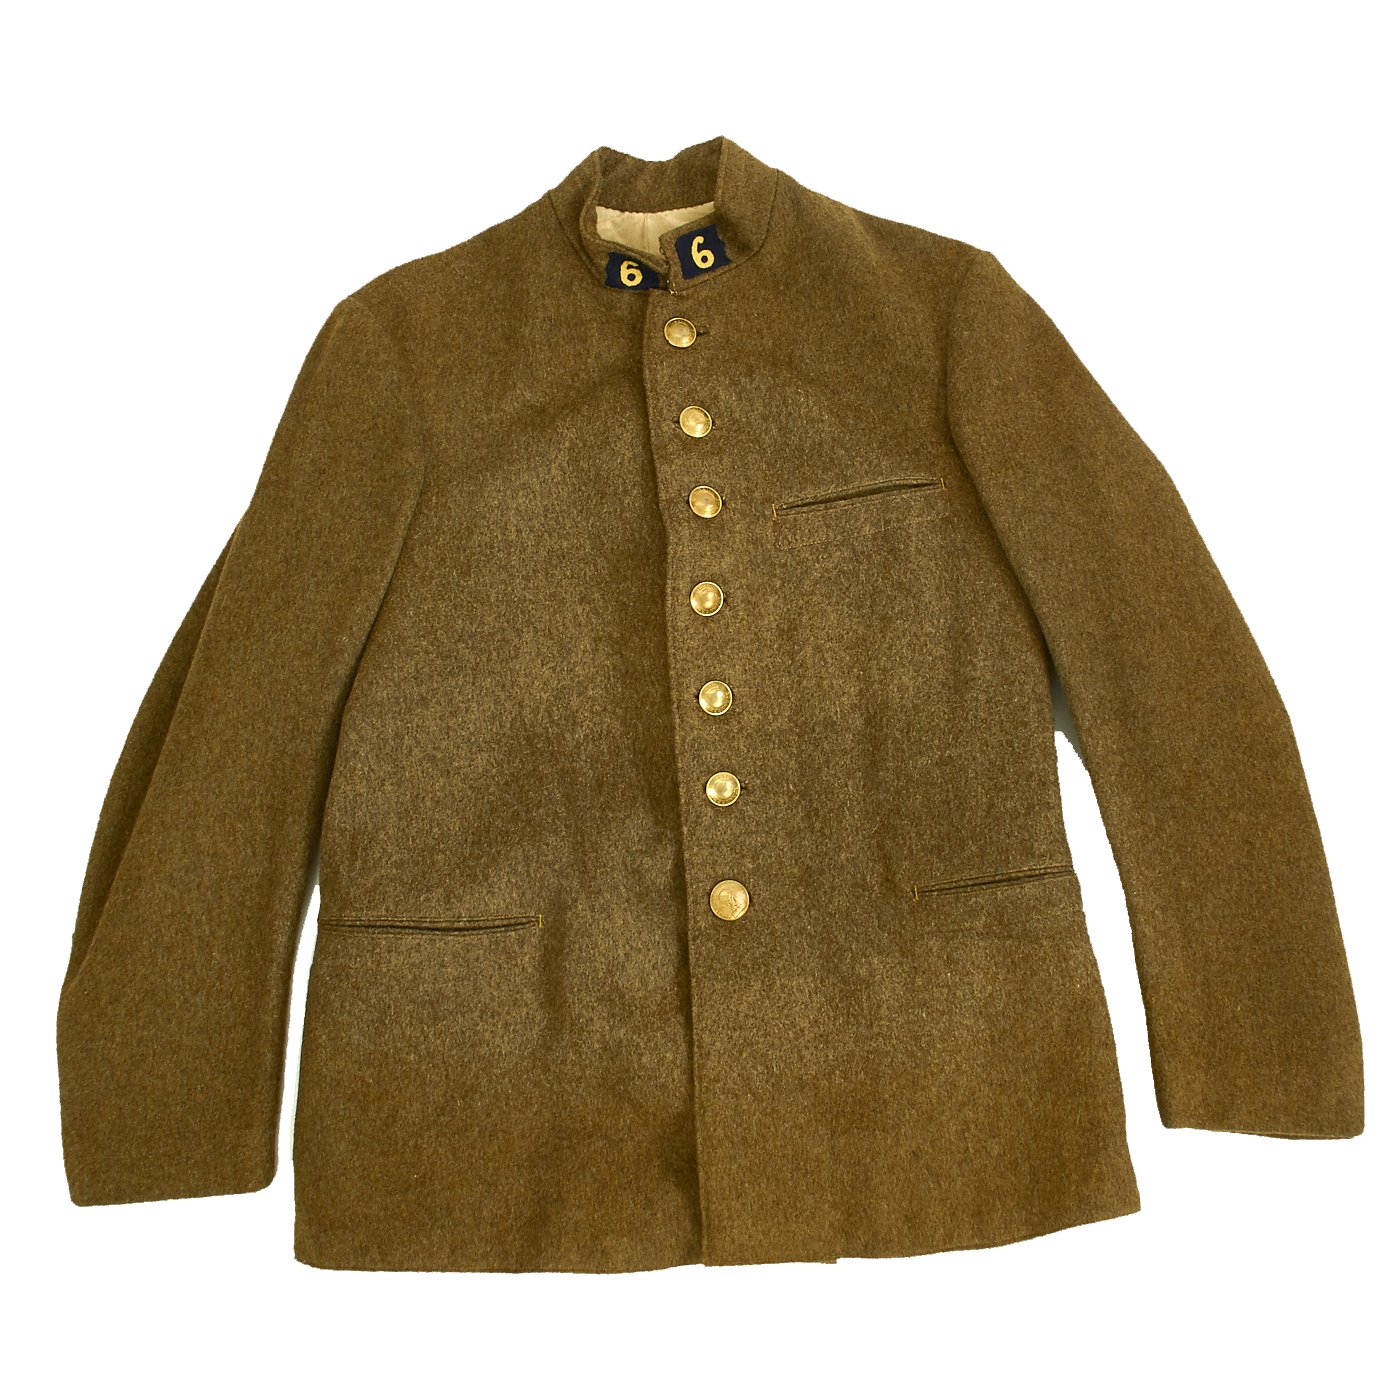 Original WWII Era French Foreign Legion Colonial Uniform Jacket ...